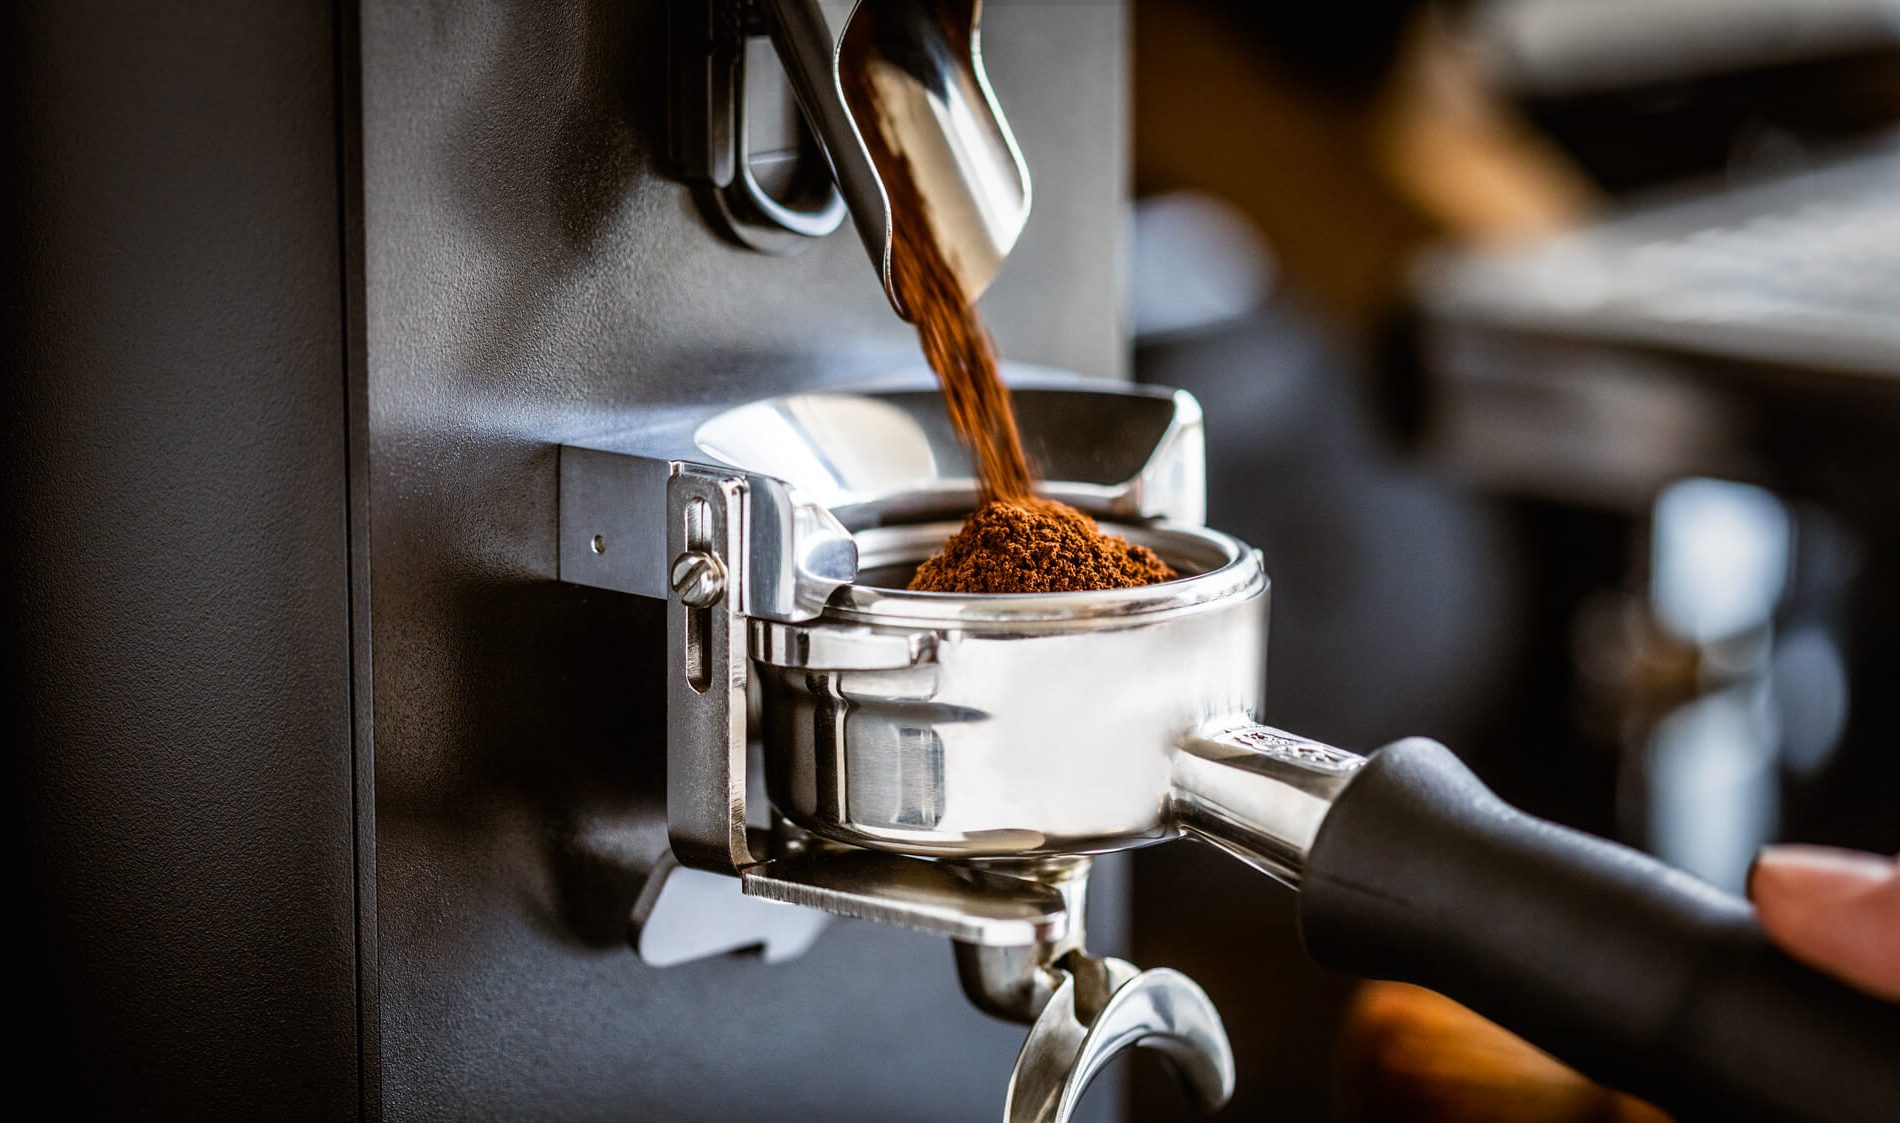 Frisch gemahlenes Kaffeemehl kommt aus der Kaffeemühle und fließt in den Siebträger